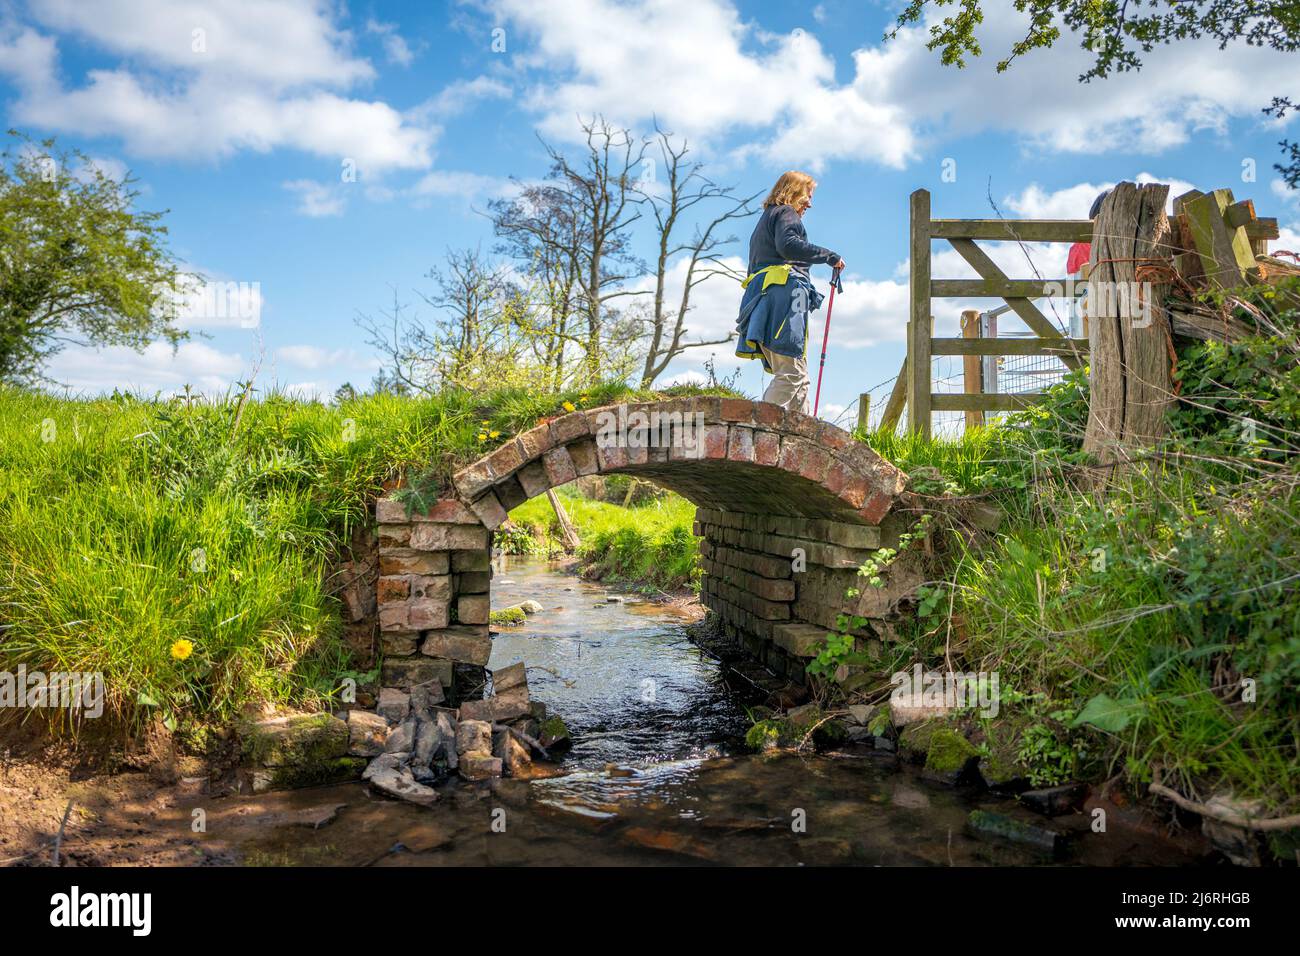 Passeggiatrice femminile che cammina su un vecchio ponte pedonale a campata singola che attraversa un piccolo ruscello o un fiume. Foto Stock